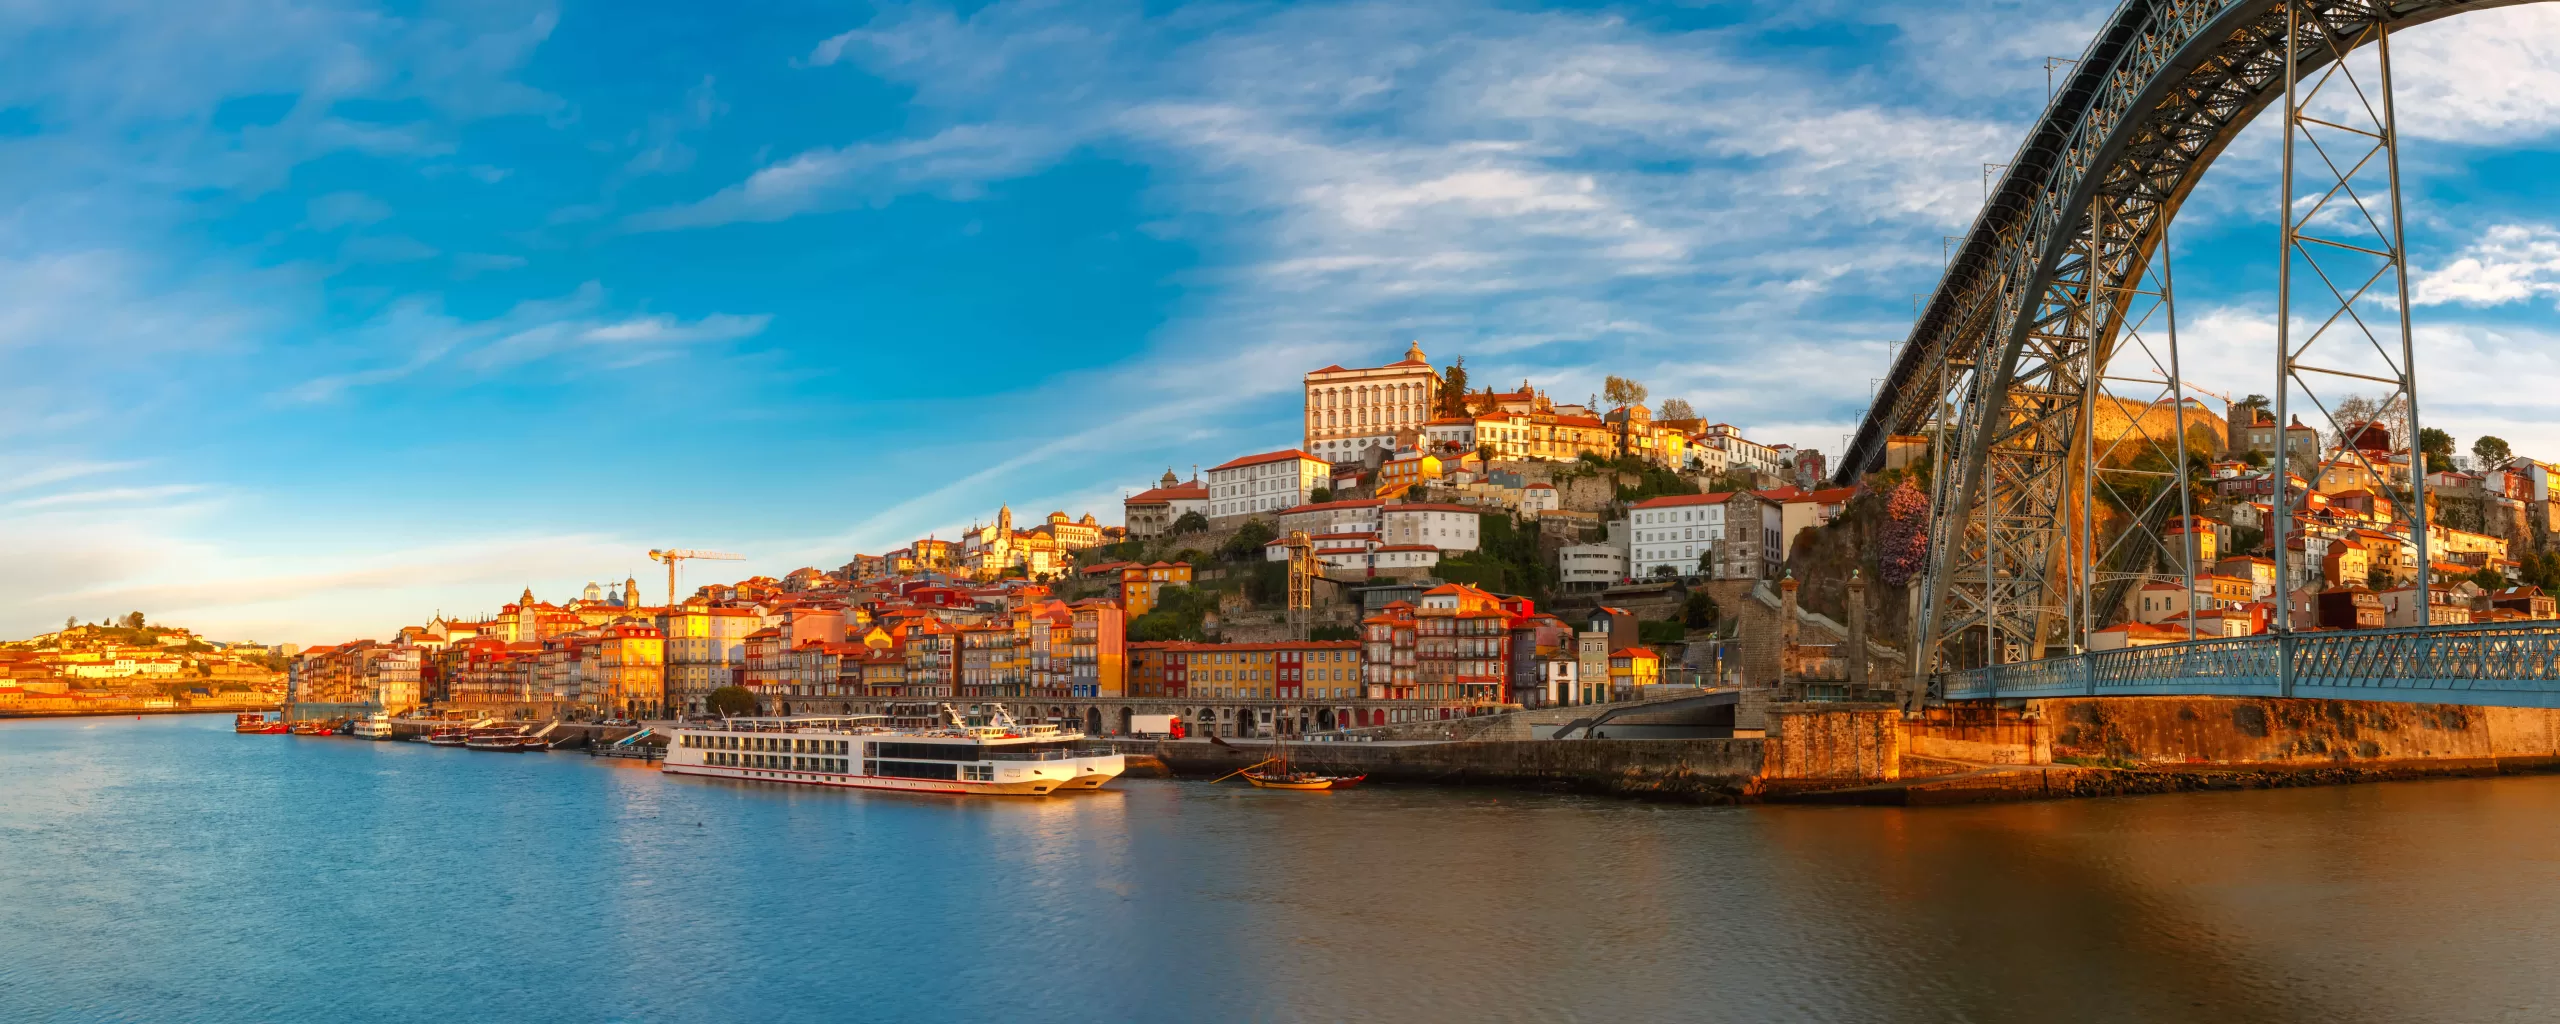 douro-river-and-dom-luis-bridge-porto-portugal